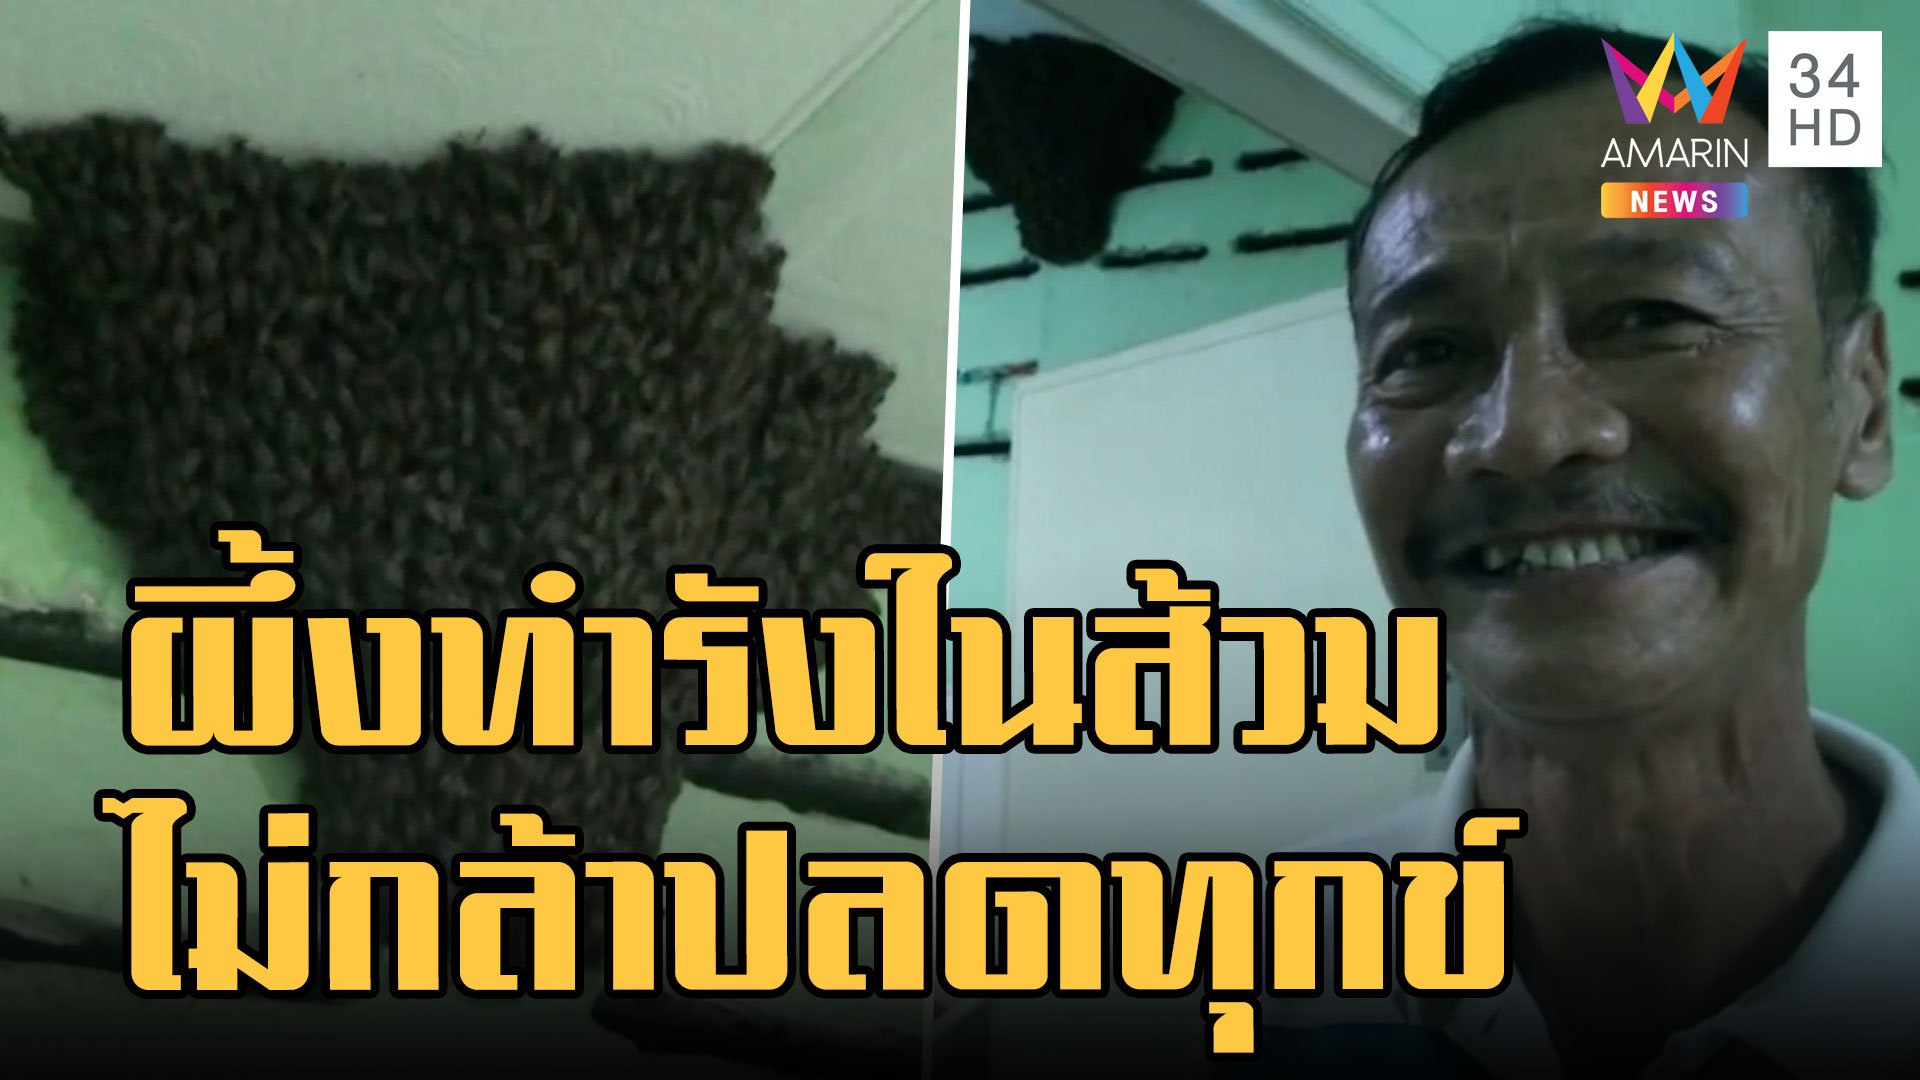 กู้ภัยรมควันรังผึ้งในส้วม เจ้าของบ้านไม่กล้าเข้าห้องน้ำบ้านตัวเอง | ข่าวอรุณอมรินทร์ | 25 ส.ค. 65 | AMARIN TVHD34